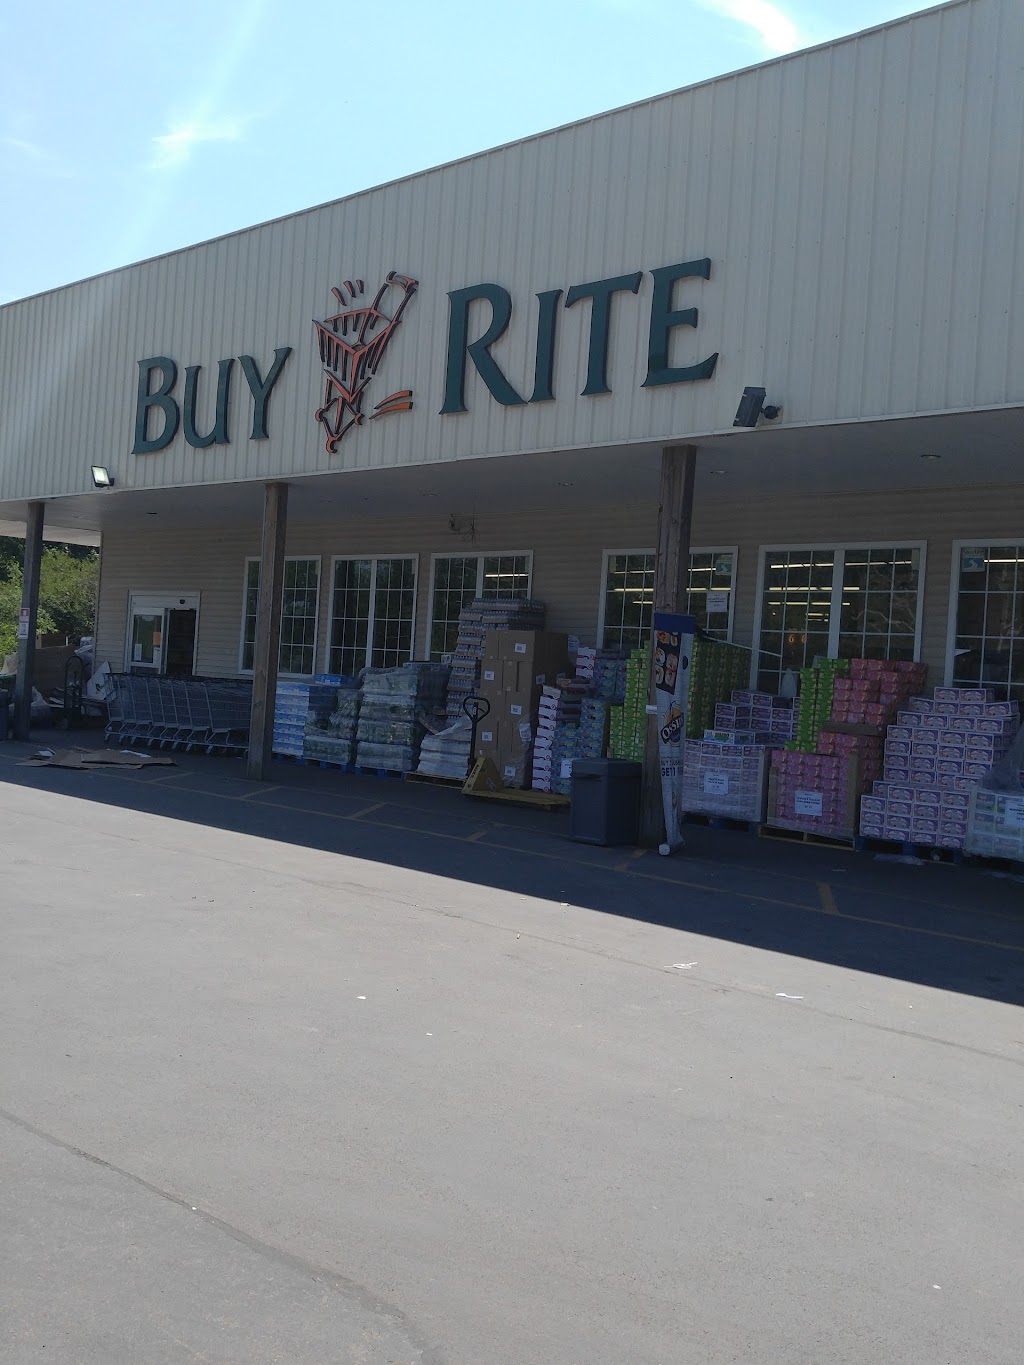 Buy Rite Kosher Supermarket | 13 Greenfield Rd, Woodridge, NY 12789 | Phone: (845) 434-7365